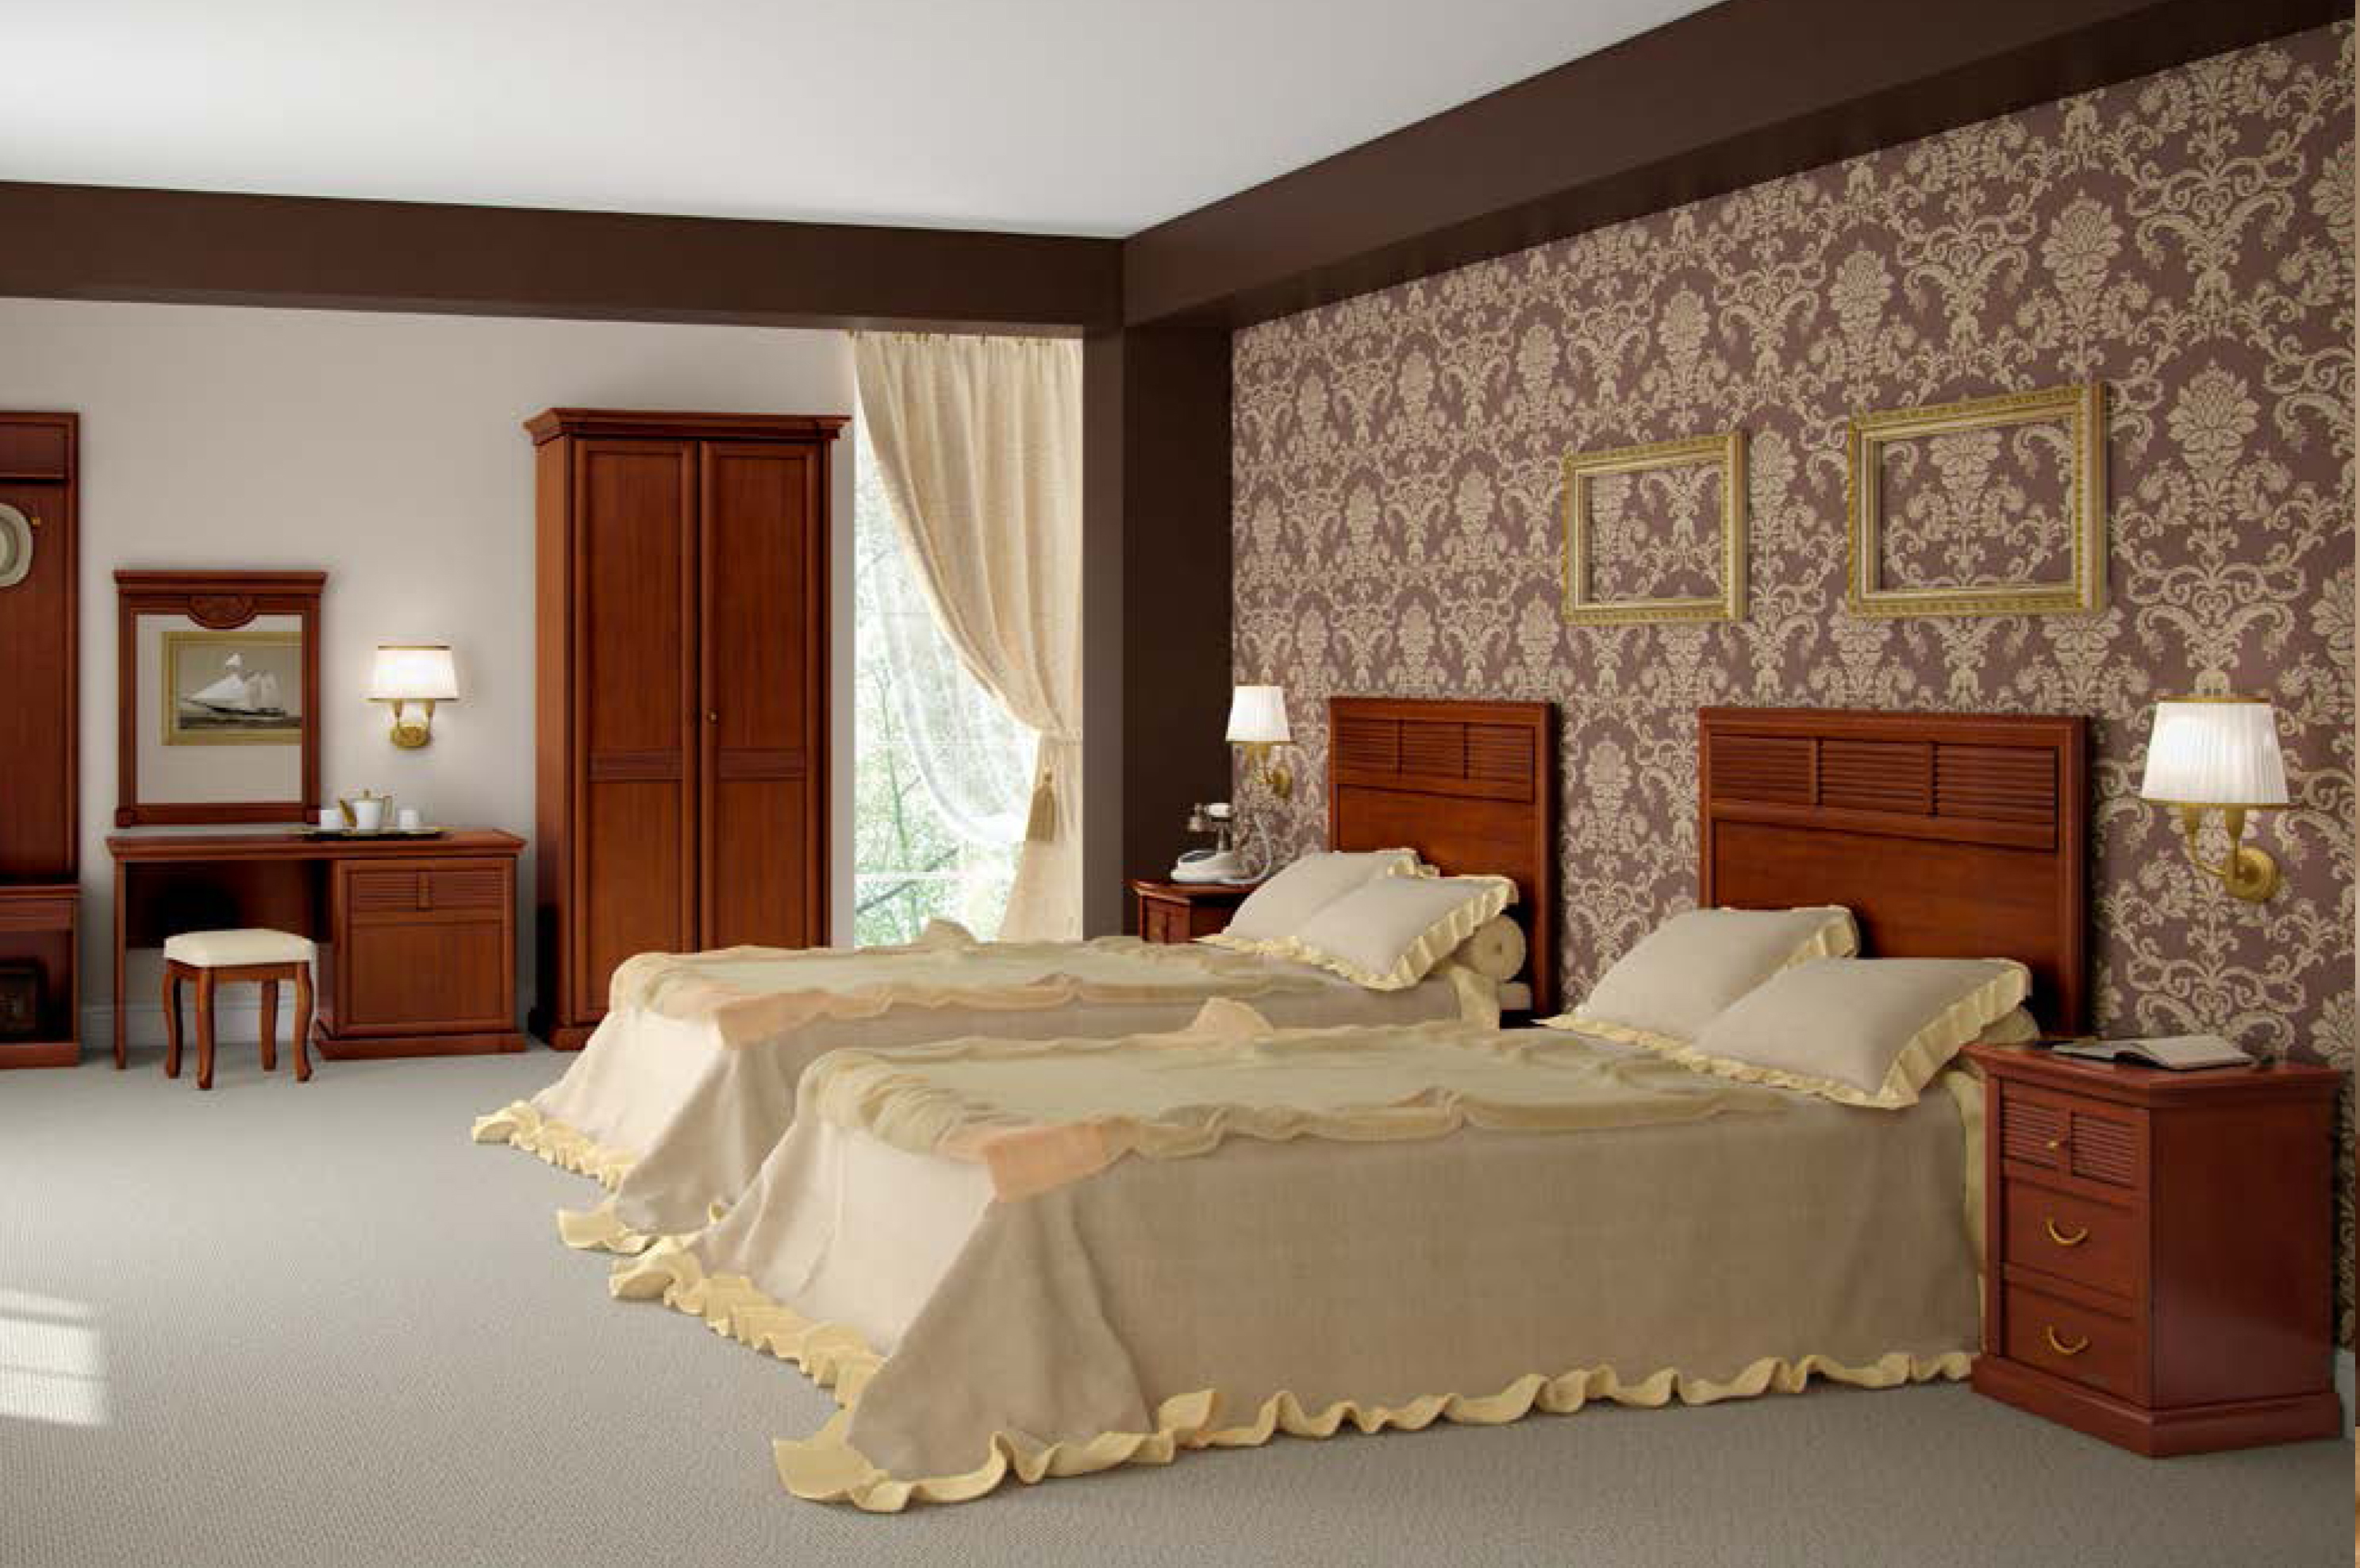 мебель для гостиниц и отелей от производителя краснодарский край